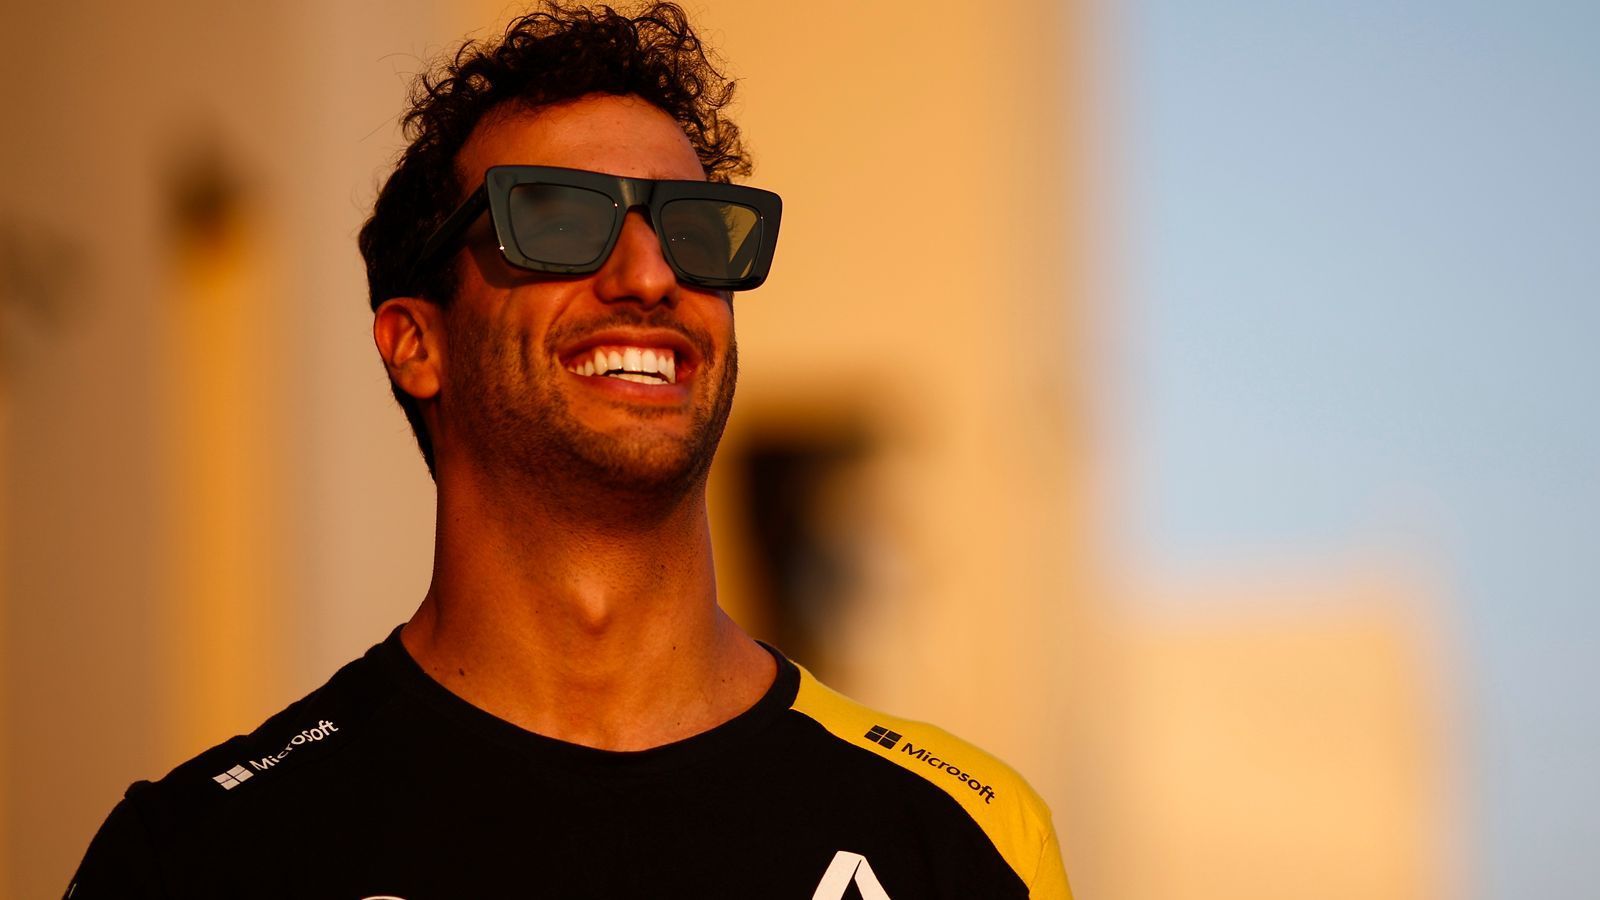 
                <strong>6. Daniel Ricciardo (Renault)</strong><br>
                Dem Gute-Laune-Onkel würde man ein besseres Auto wünschen, damit er mehr Fernsehzeit bekommt. Ist sechs Mal wegen eines Schadens ausgefallen, trotzdem noch auf Platz neun gefahren und hat dabei Nico Hülkenberg ausgestochen. Ob sein Wechsel von Red Bull zu Renault richtig war, kann man angesichts seiner eigenen Ansprüche diskutieren. Der Chef bei den Franzosen ist er trotzdem, auch wenn mit Esteban Ocon jetzt ein Lokalmatador kommt. Bekommt Renault ein besseres Auto hin, haben sie mit dem Australier einen der besten Fahrer im Grid.
              